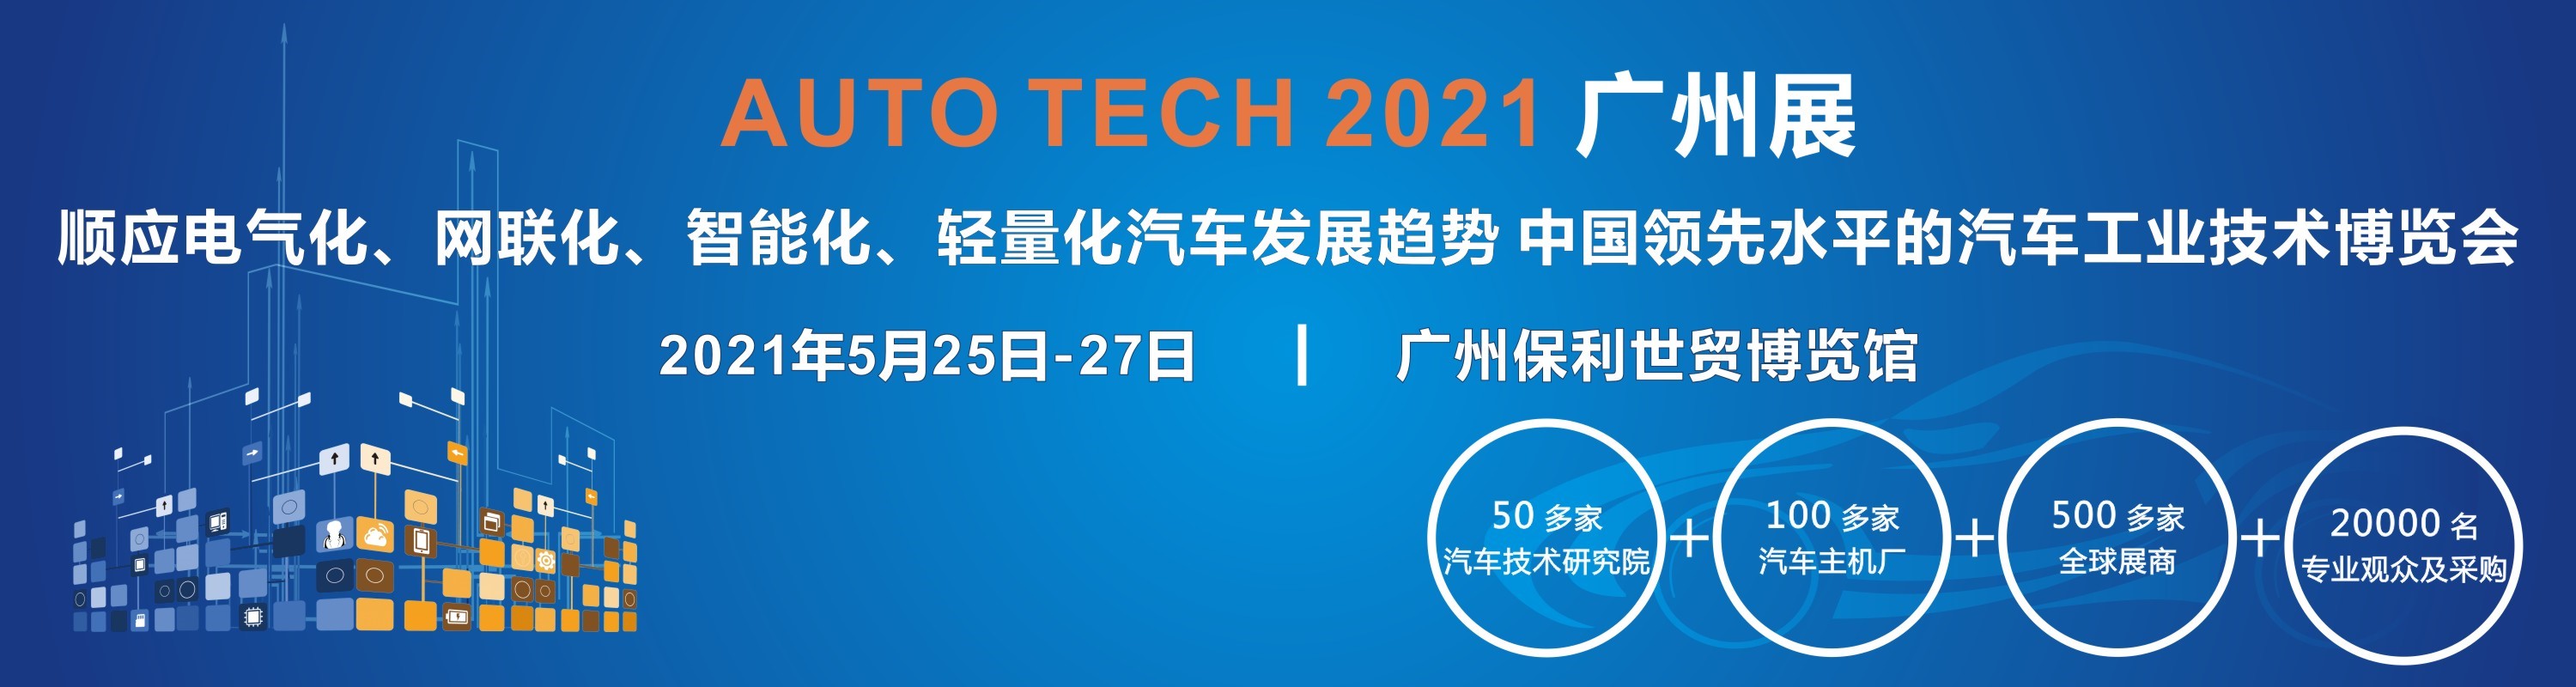 2021 AUTO TECH 第八届中国国际汽车技术展览会将于明年5月举行！